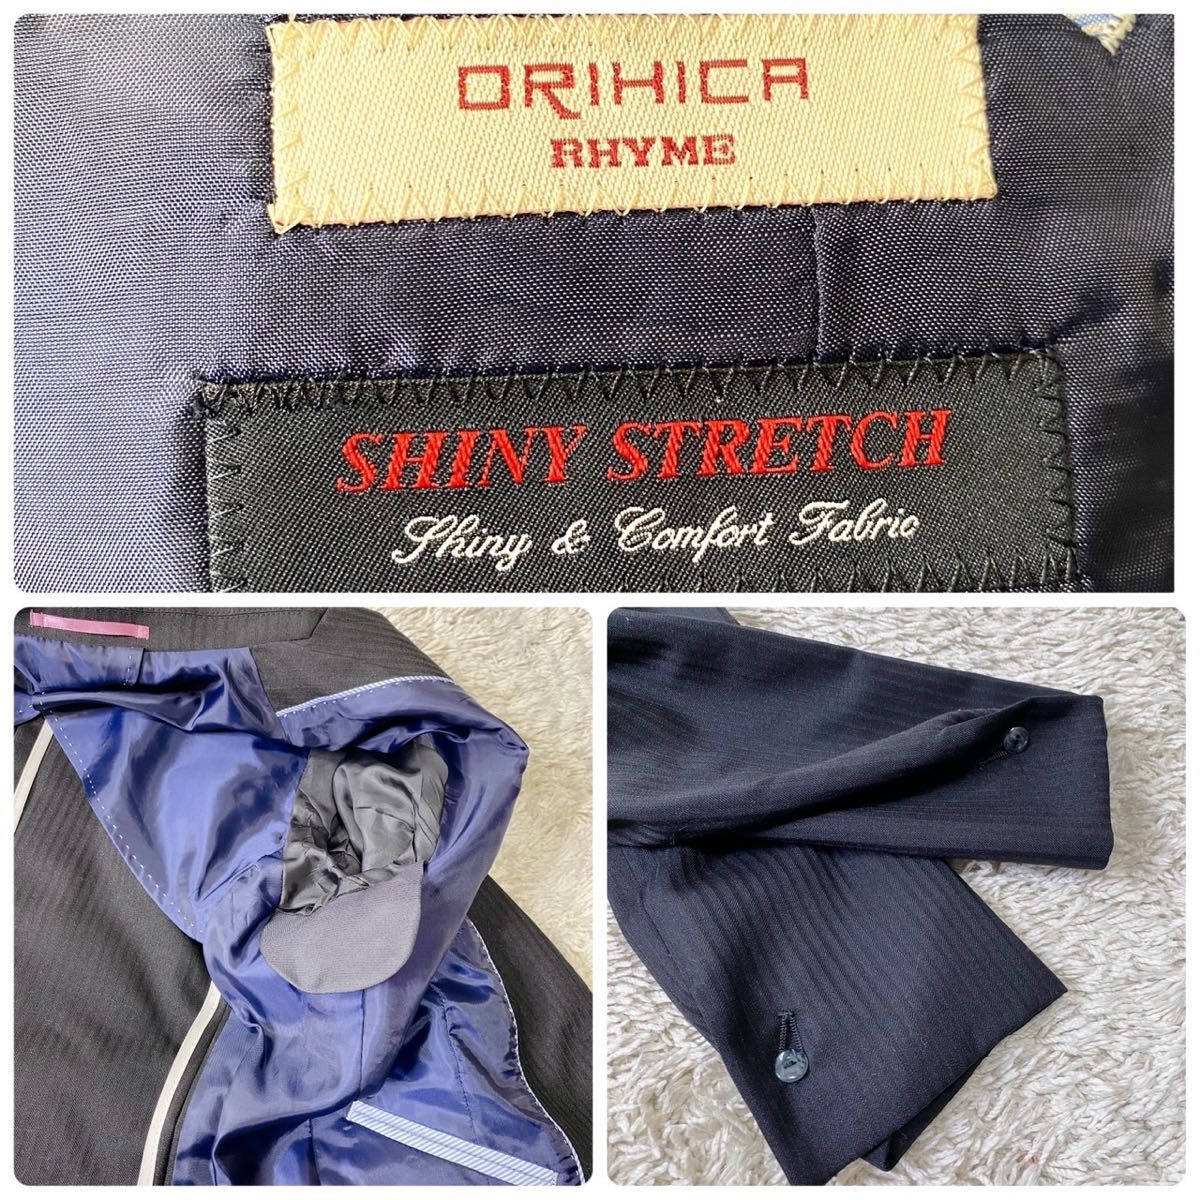 【美品】オリヒカ スカート スーツ セットアップ ストライプ ストレッチ